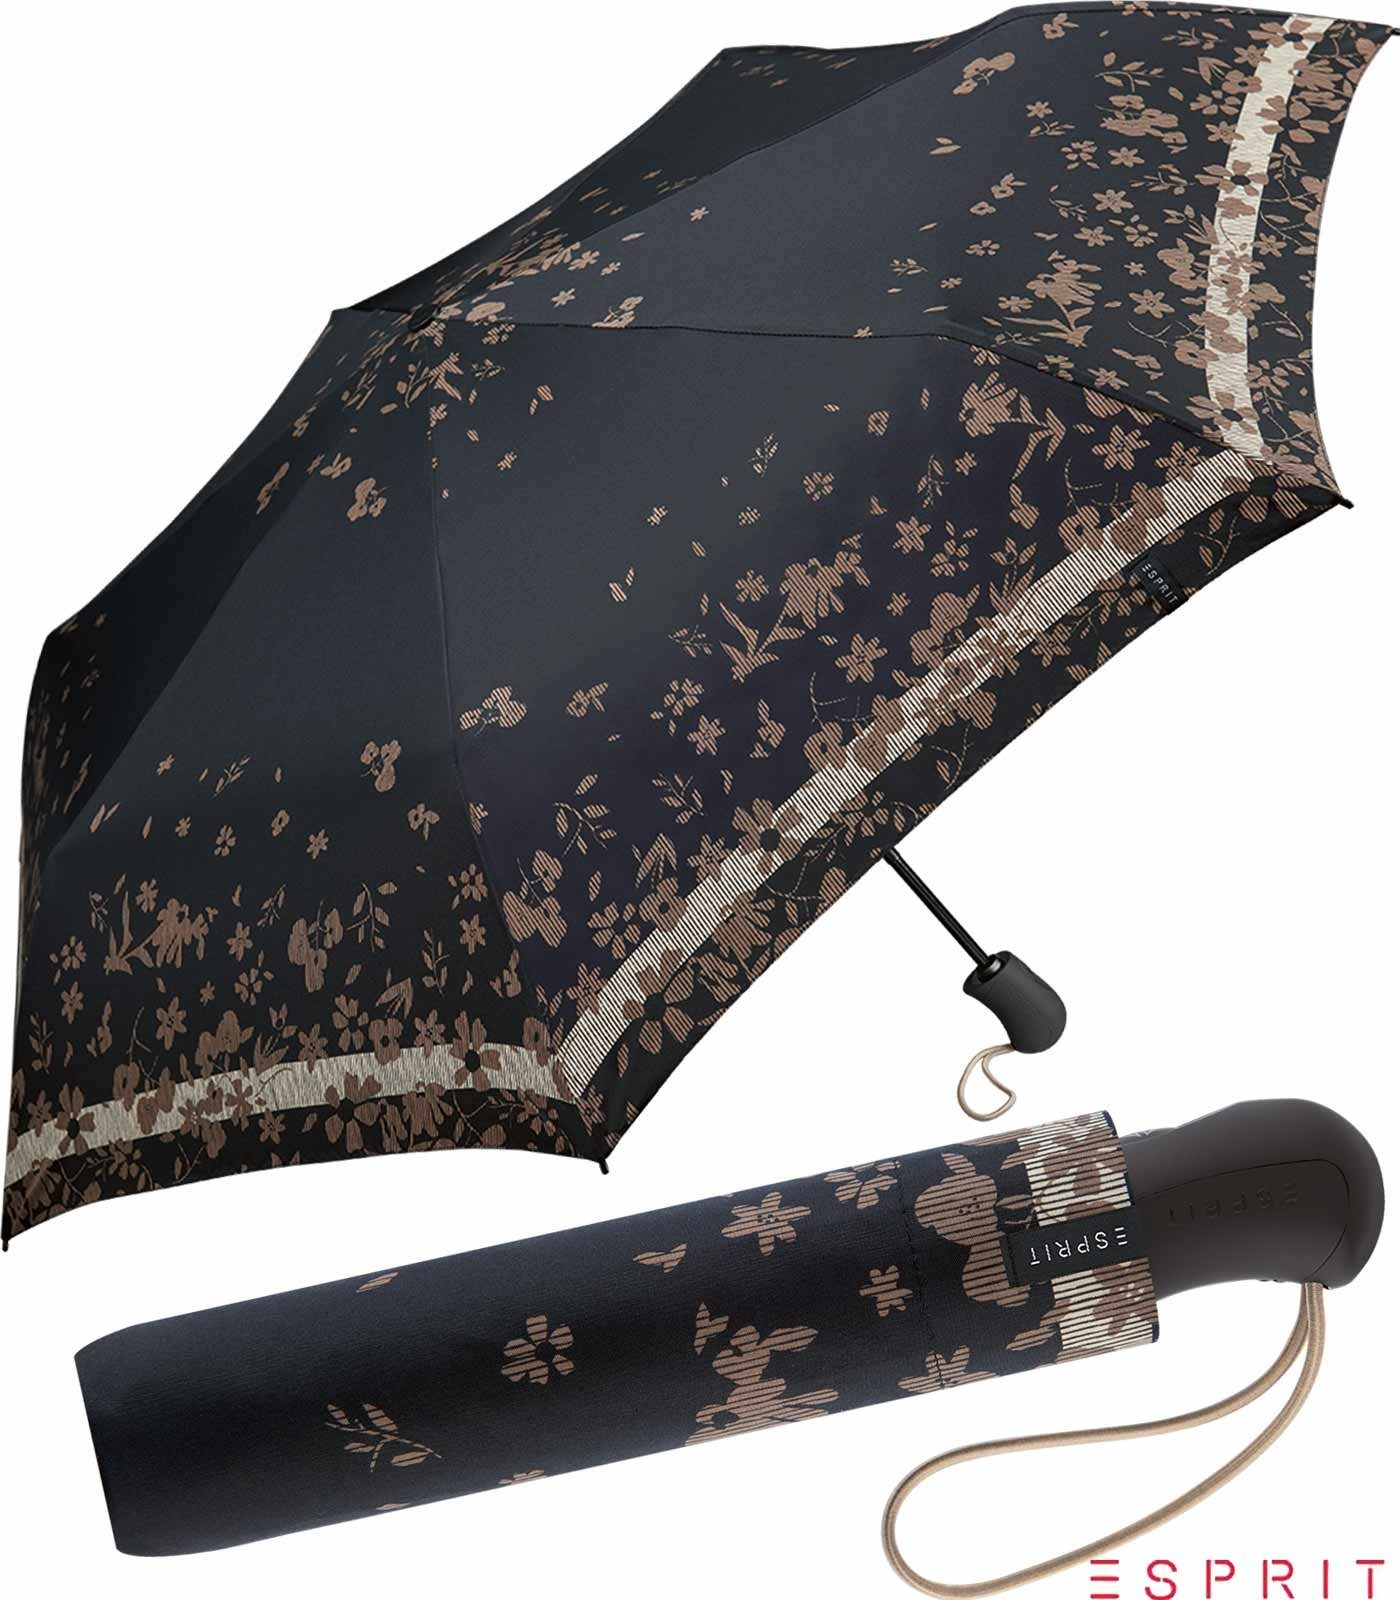 Esprit Taschenregenschirm Easymatic Light Auf-Zu Automatik Poetry Flower - black, stabil, praktisch, mit Blumenmuster schwarz